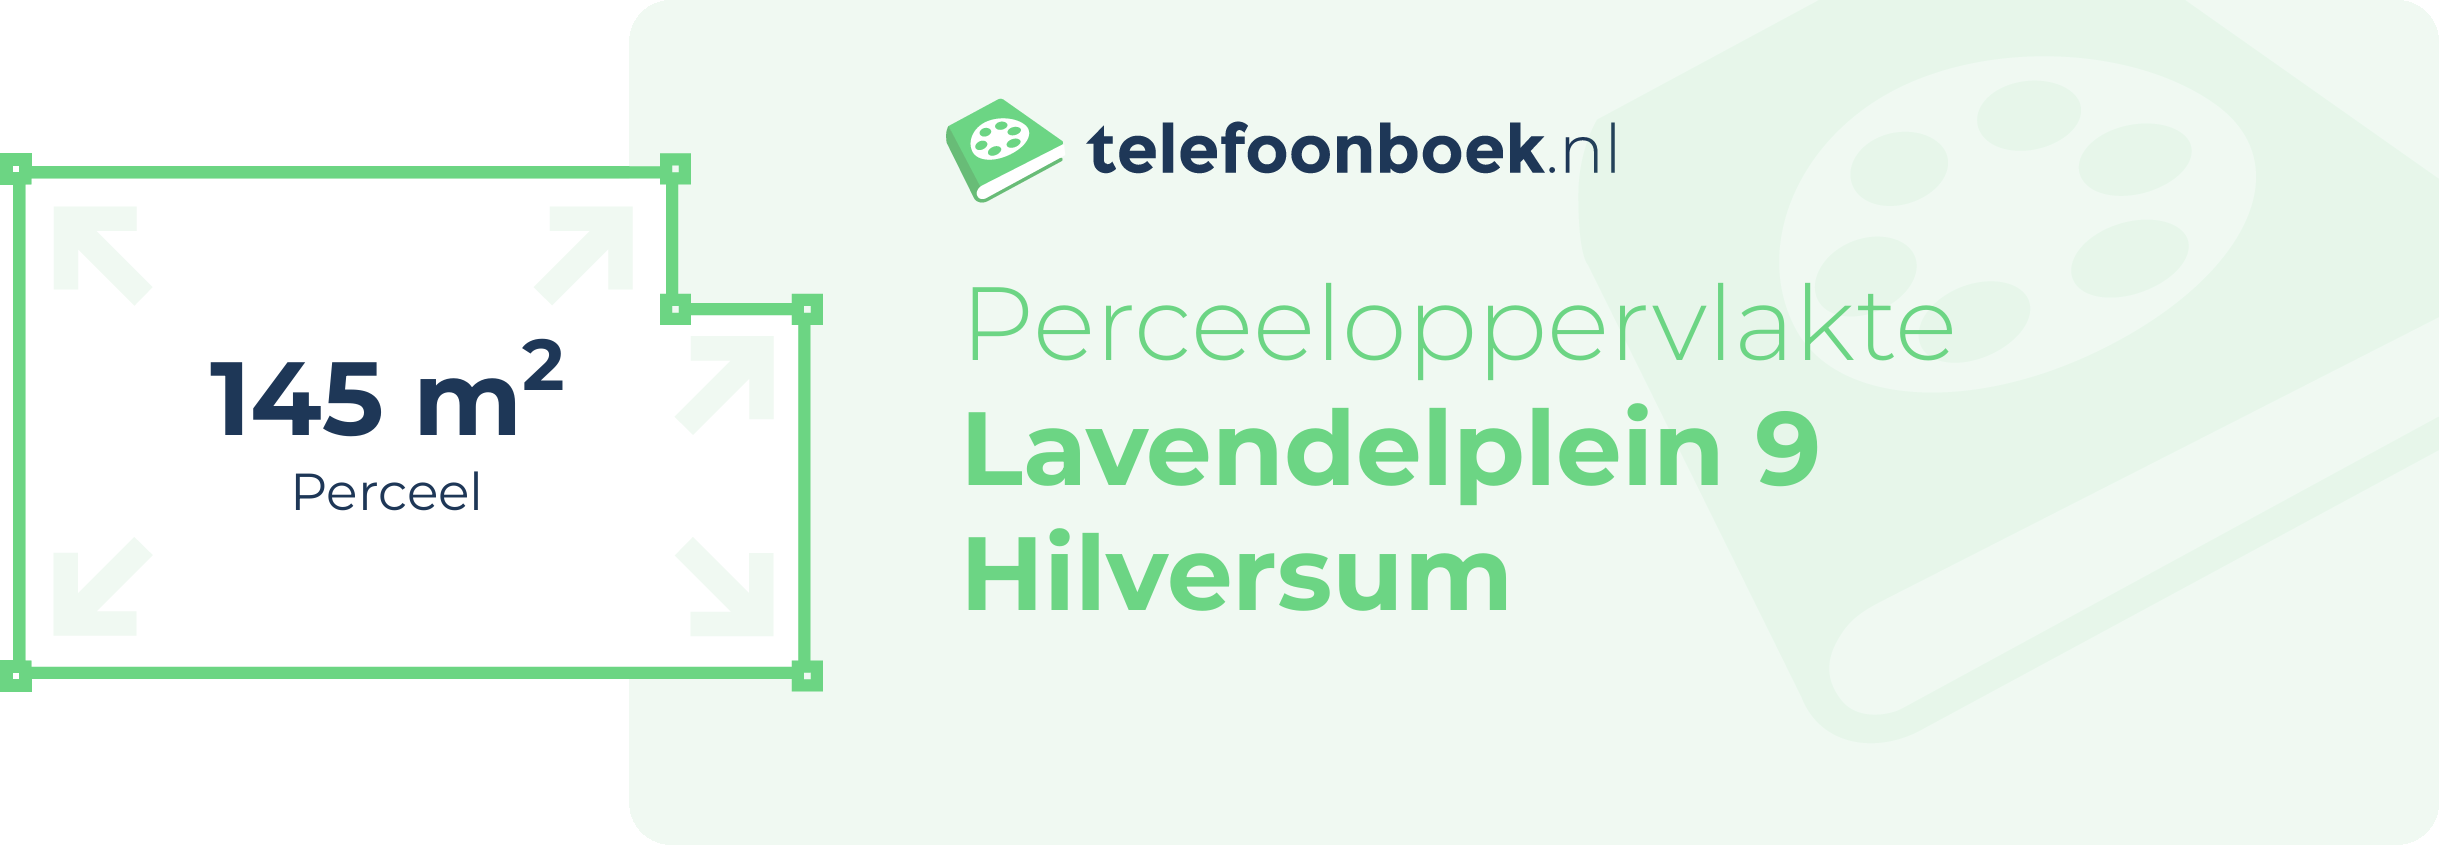 Perceeloppervlakte Lavendelplein 9 Hilversum